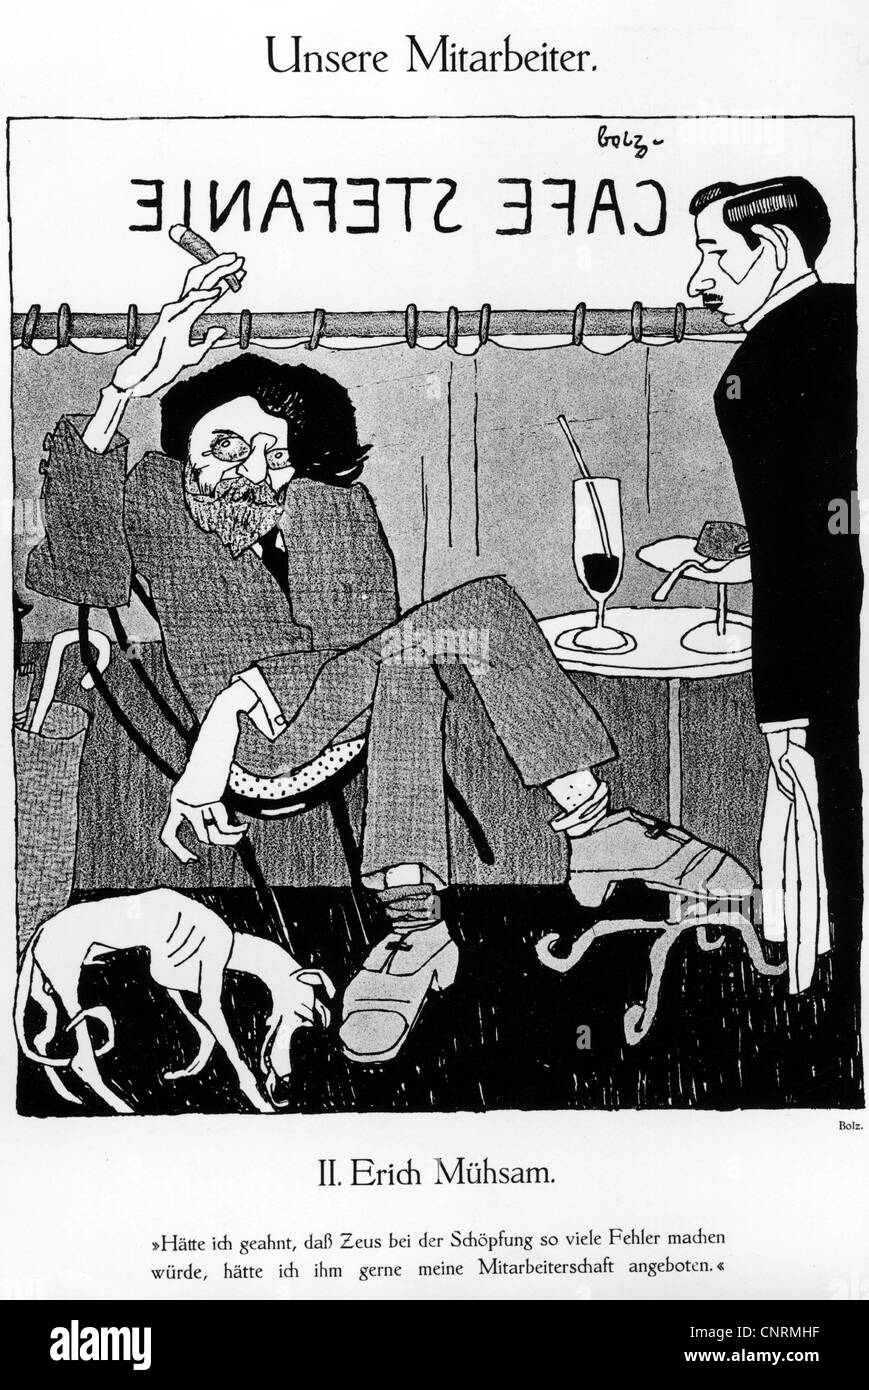 Muehsam, Erich, 6.4.1878 - 11.7.1934, German anarchist, author / writer, publicist, caricature from 'Der Komet', No. 22, 29.6.1911, Stock Photo